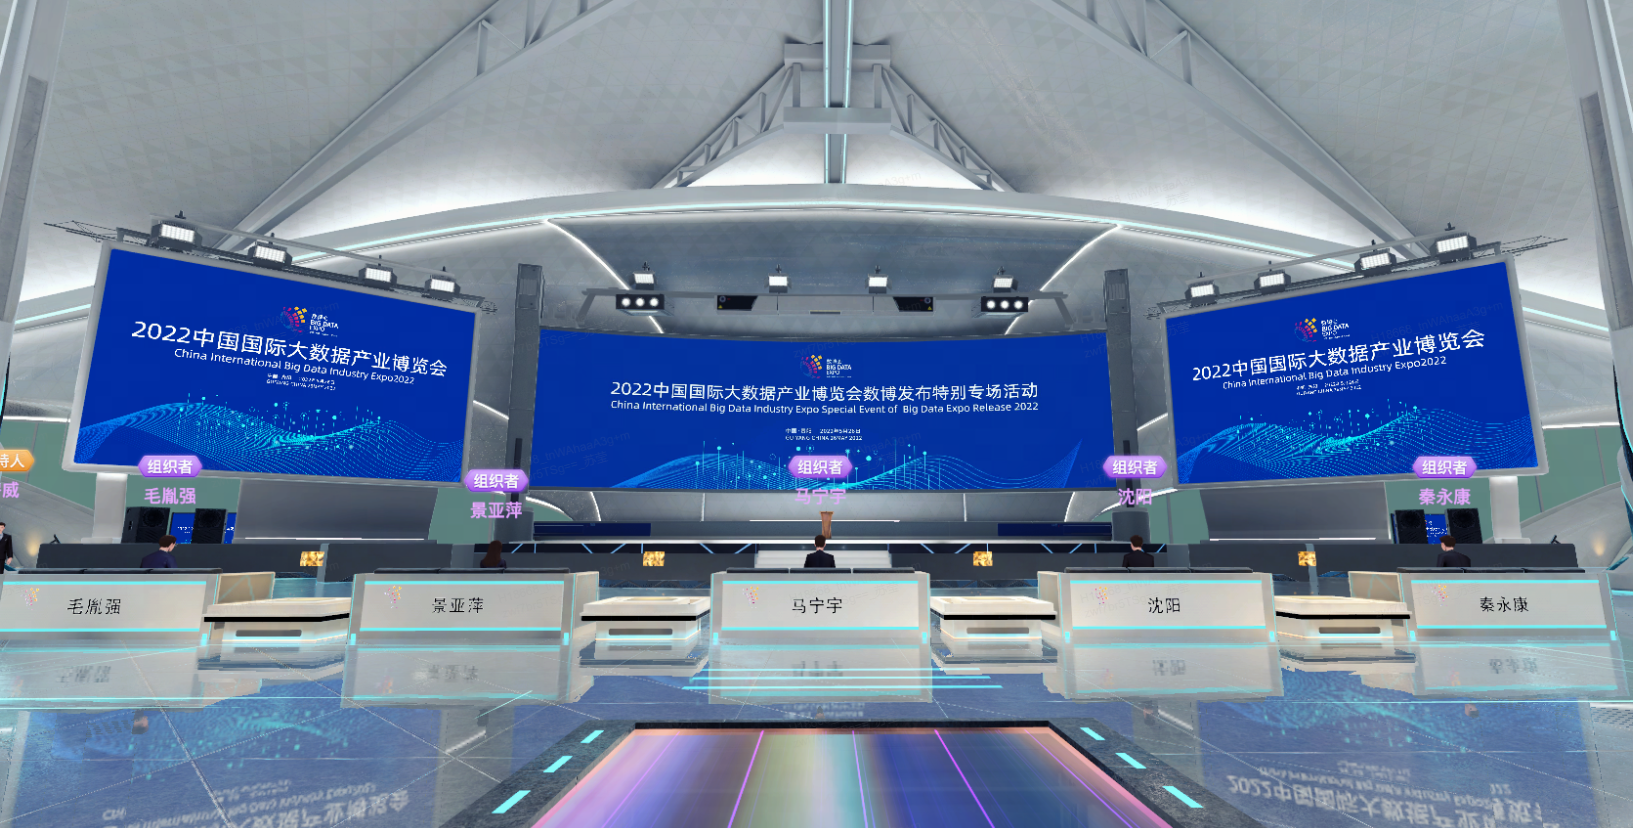 图片显示一个现代化会议场地，有多个屏幕展示信息，前方设有讲台和排列整齐的座位。整体设计科技感强，色调以蓝白为主。